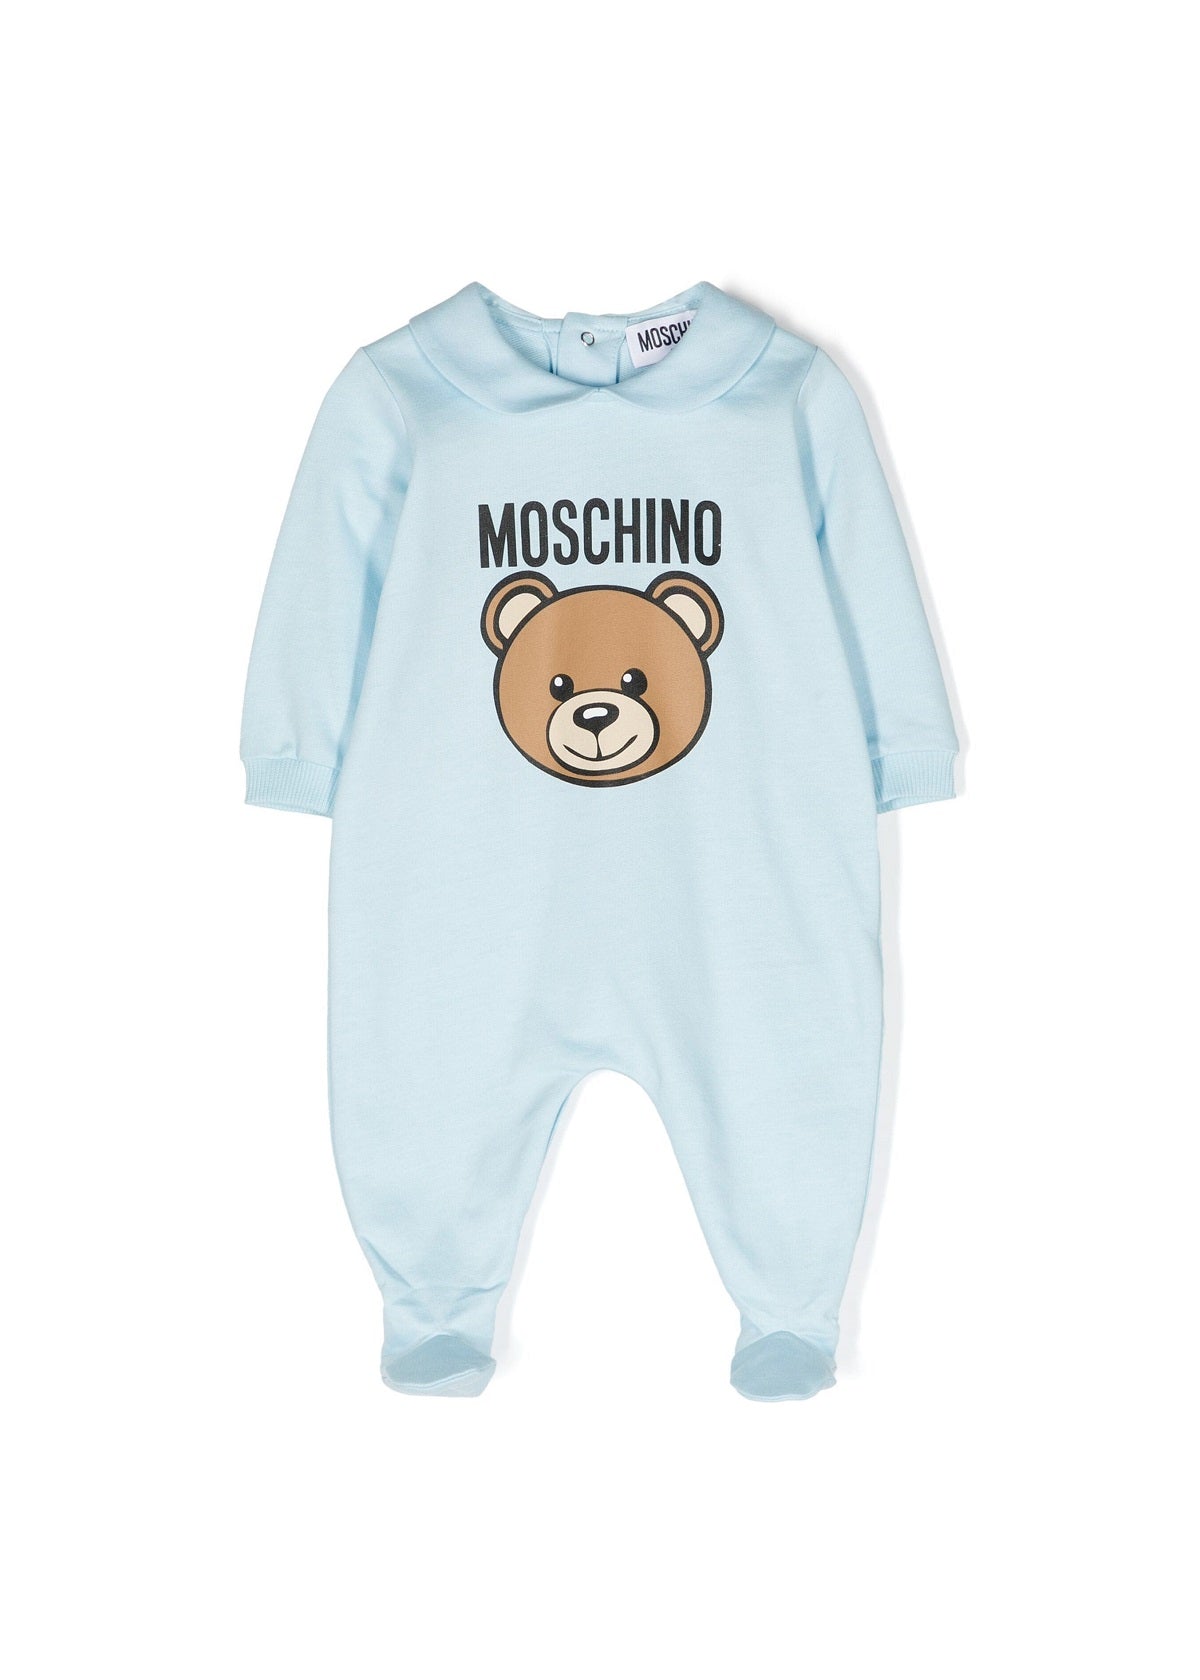 Moschino Kids Tutina Celeste con Logo Teddy Bear